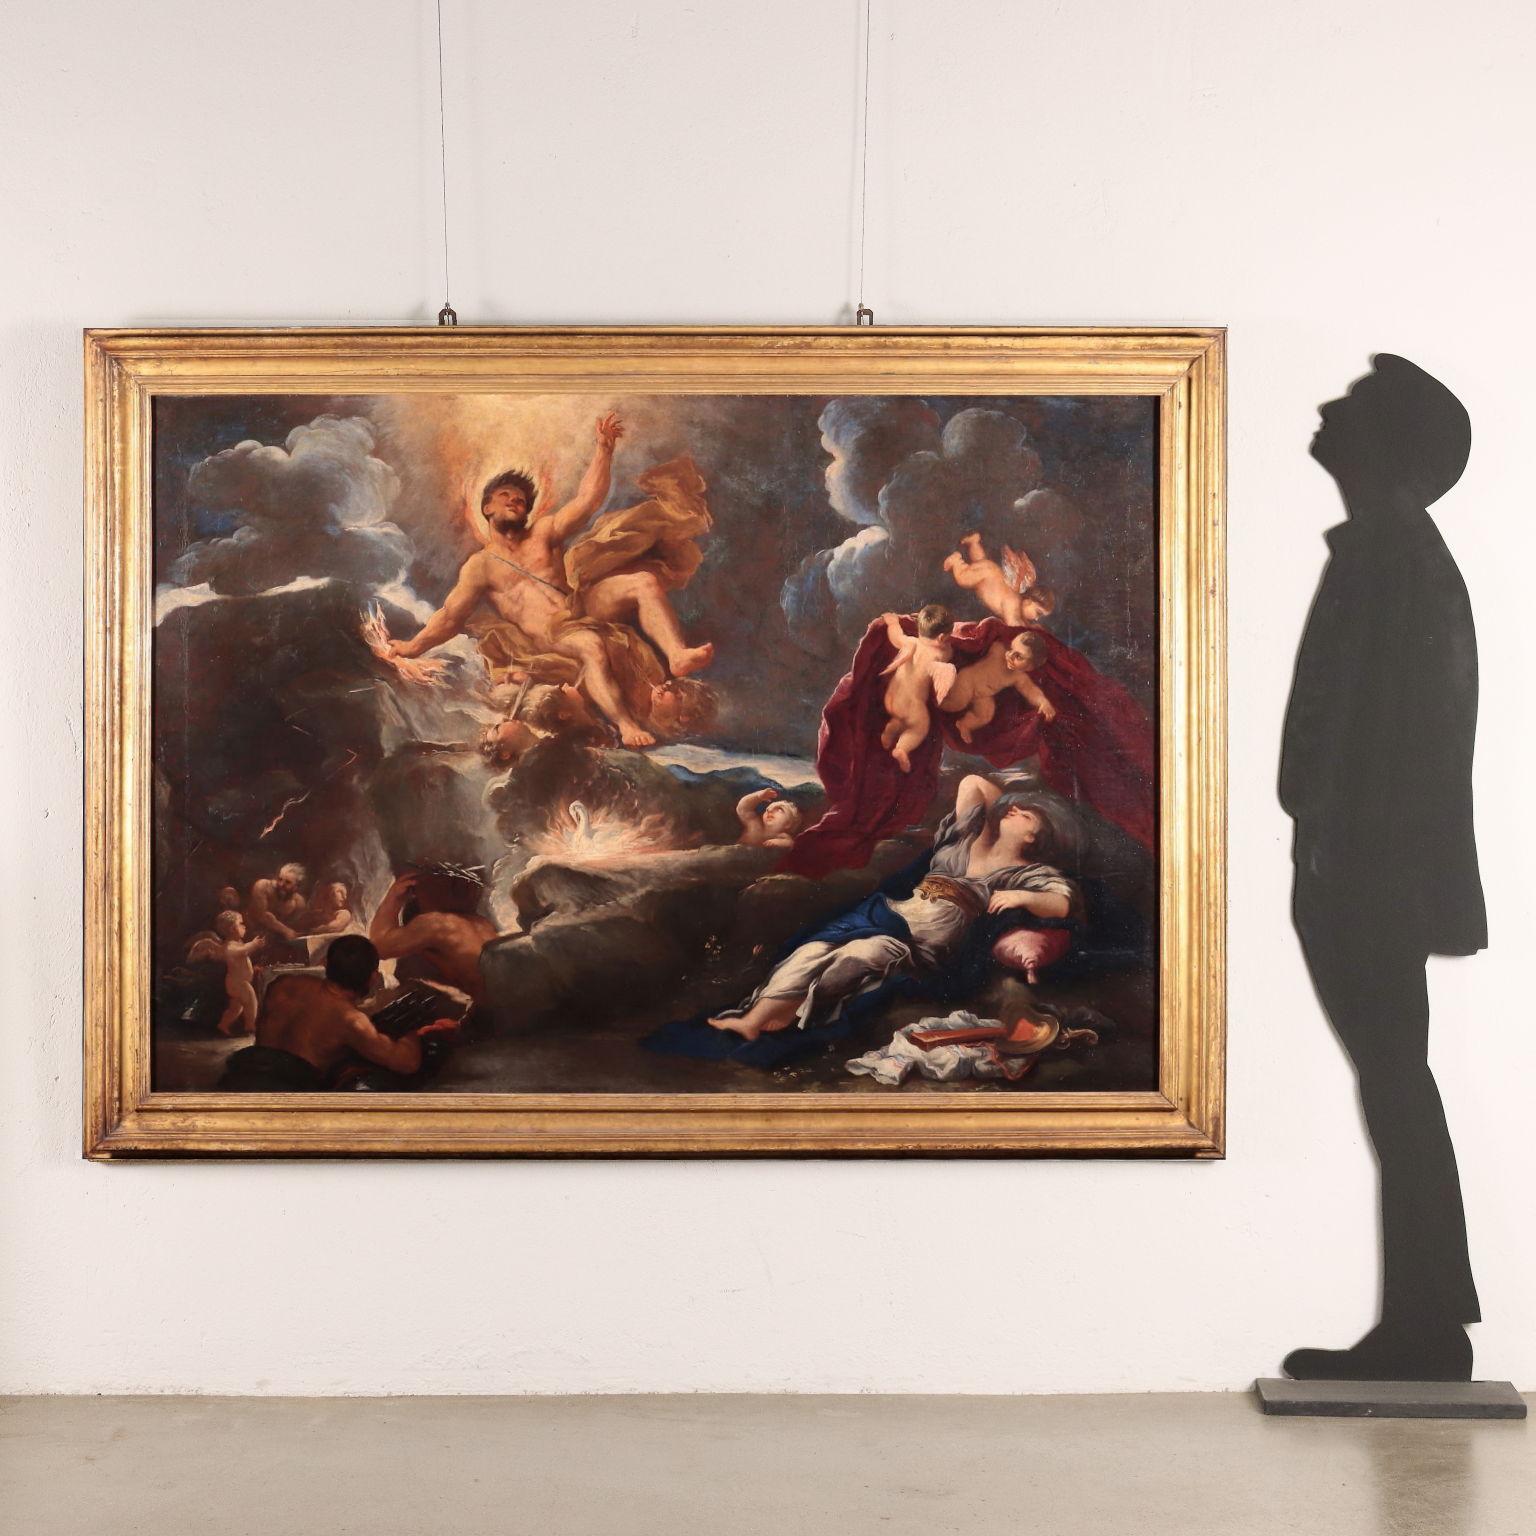 Dipinto di Bottega di Luca Giordano, Allegoria del Fuoco con Giove e Semele - Painting by Luca Giordano (follower of)